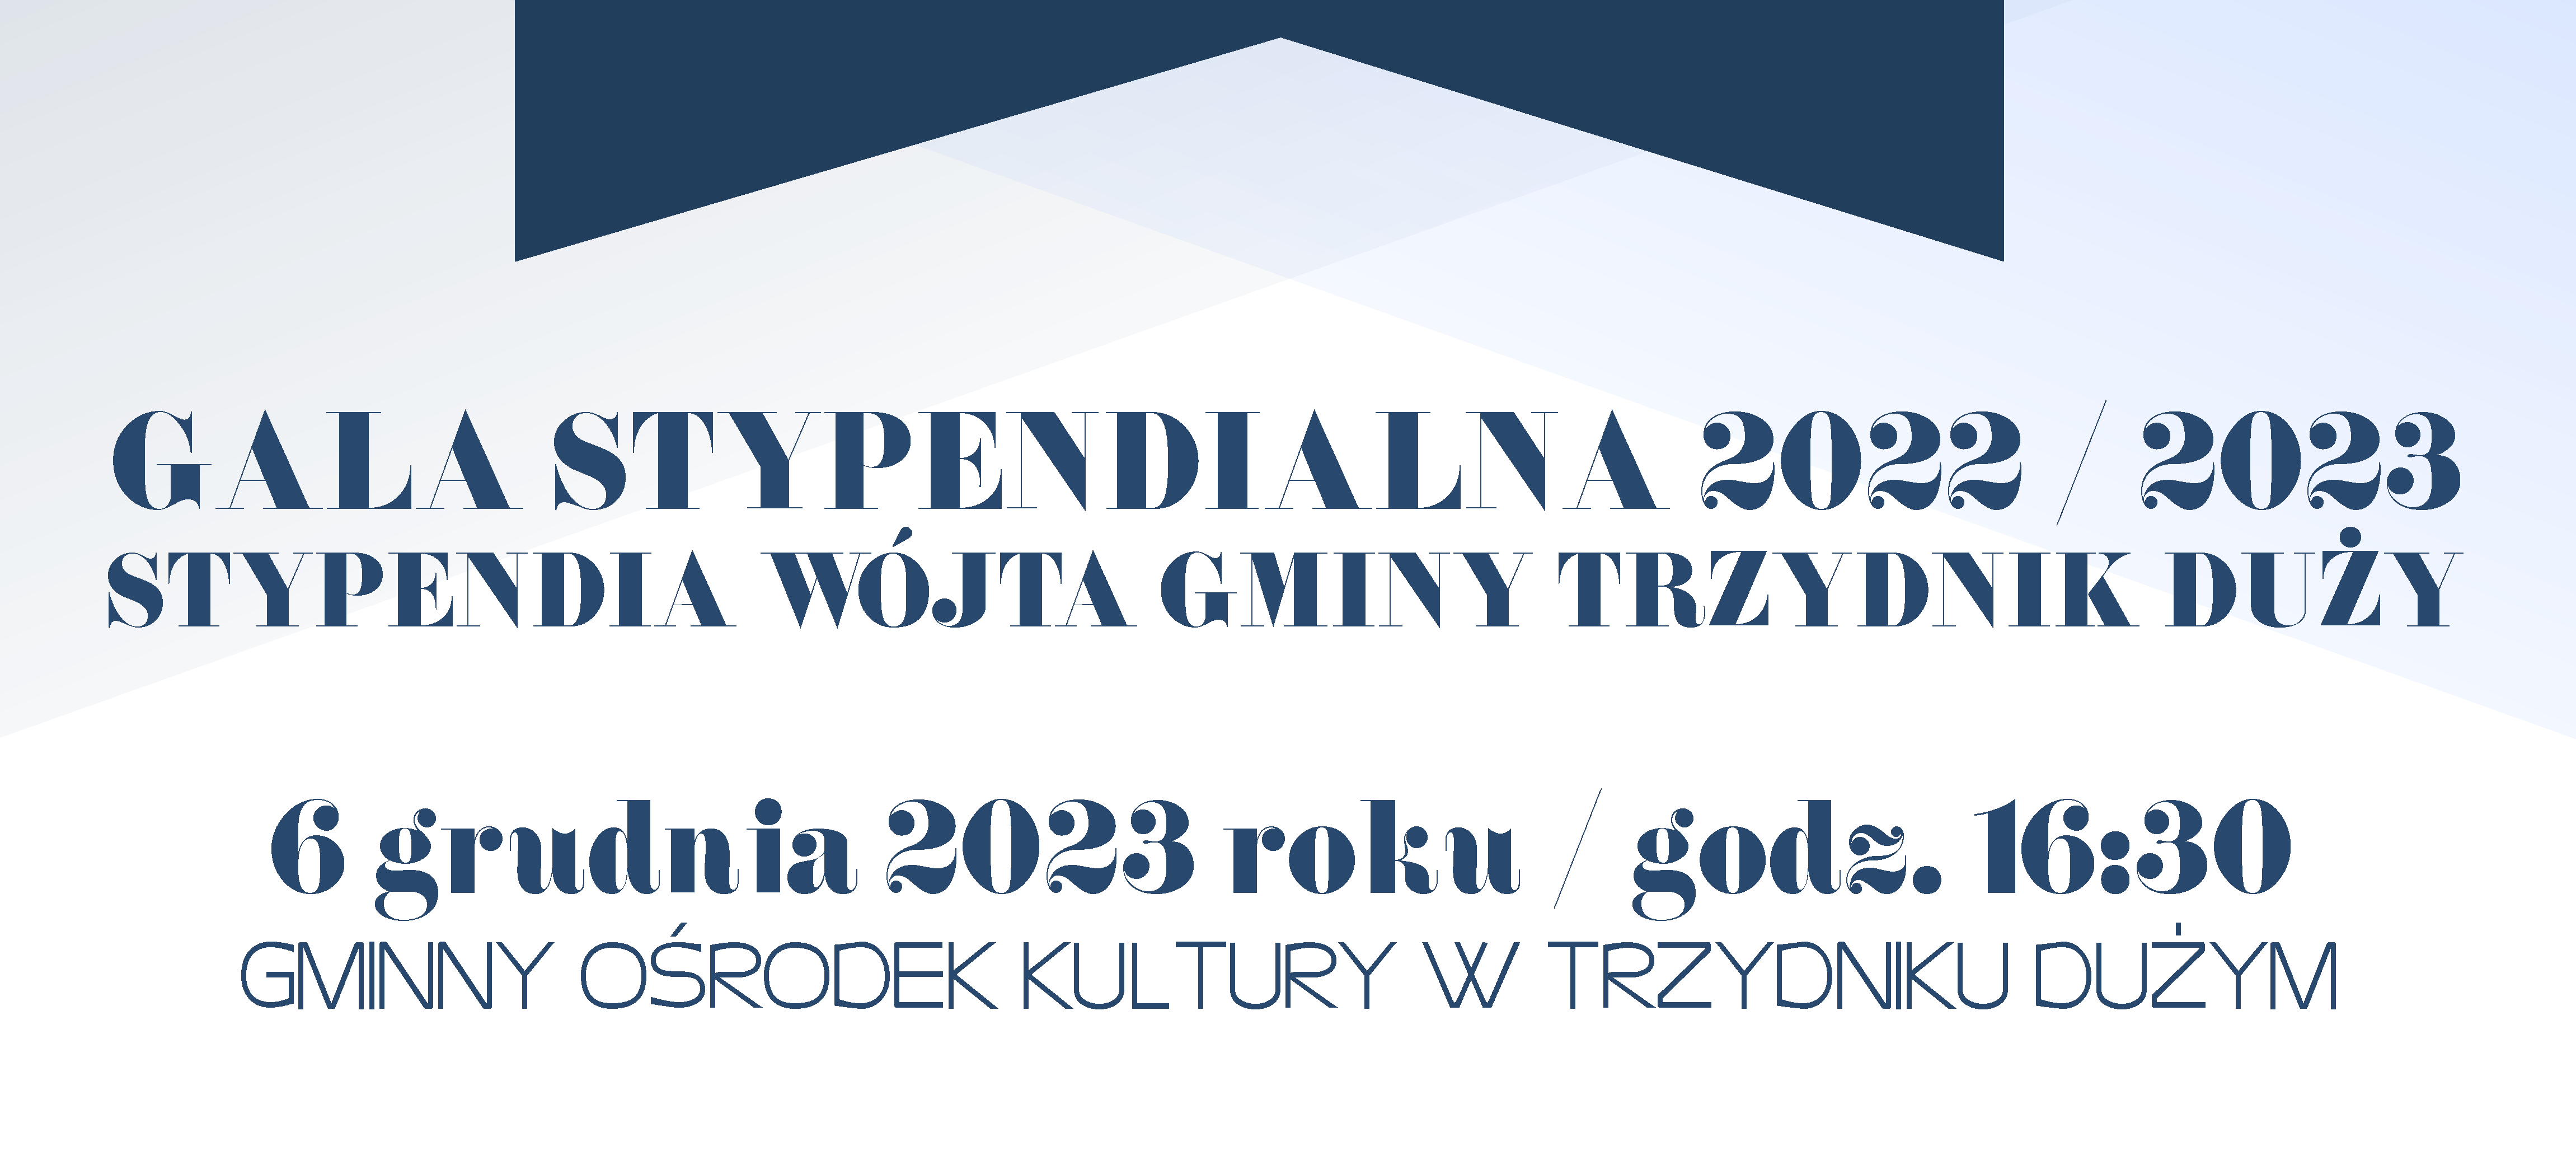 Plakat zapraszający na "Gala Stypendialna 2022/2023" organizowaną przez Wójt Gminy Trzcińsk Duży, która odbędzie się 6 grudnia 2023 roku o godzinie 16:30 w Gminnym Ośrodku Kultury w Trzcińsku Dużym.